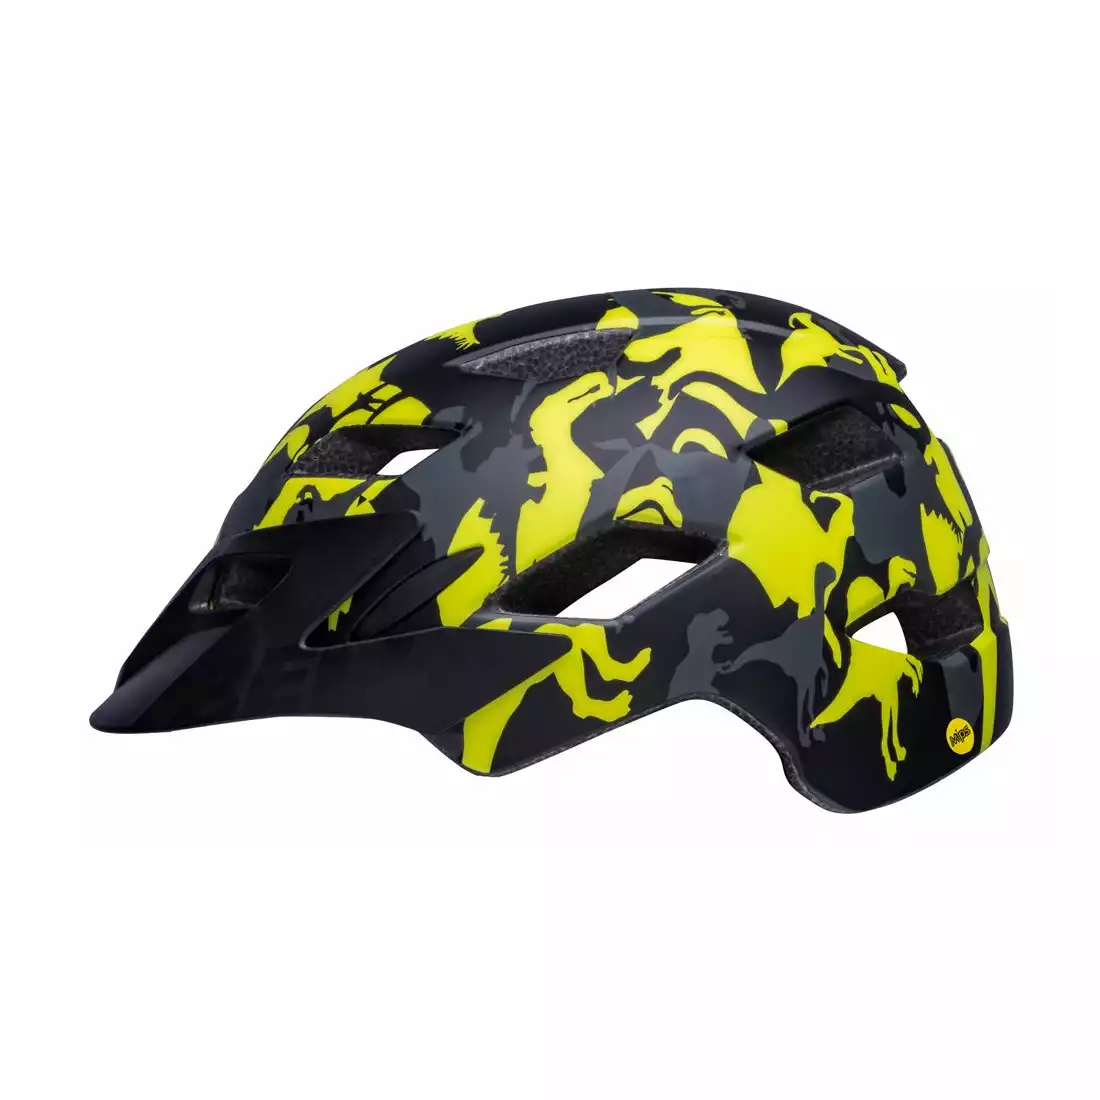 BELL SIDETRACK Children's bicycle helmet, black-yellow